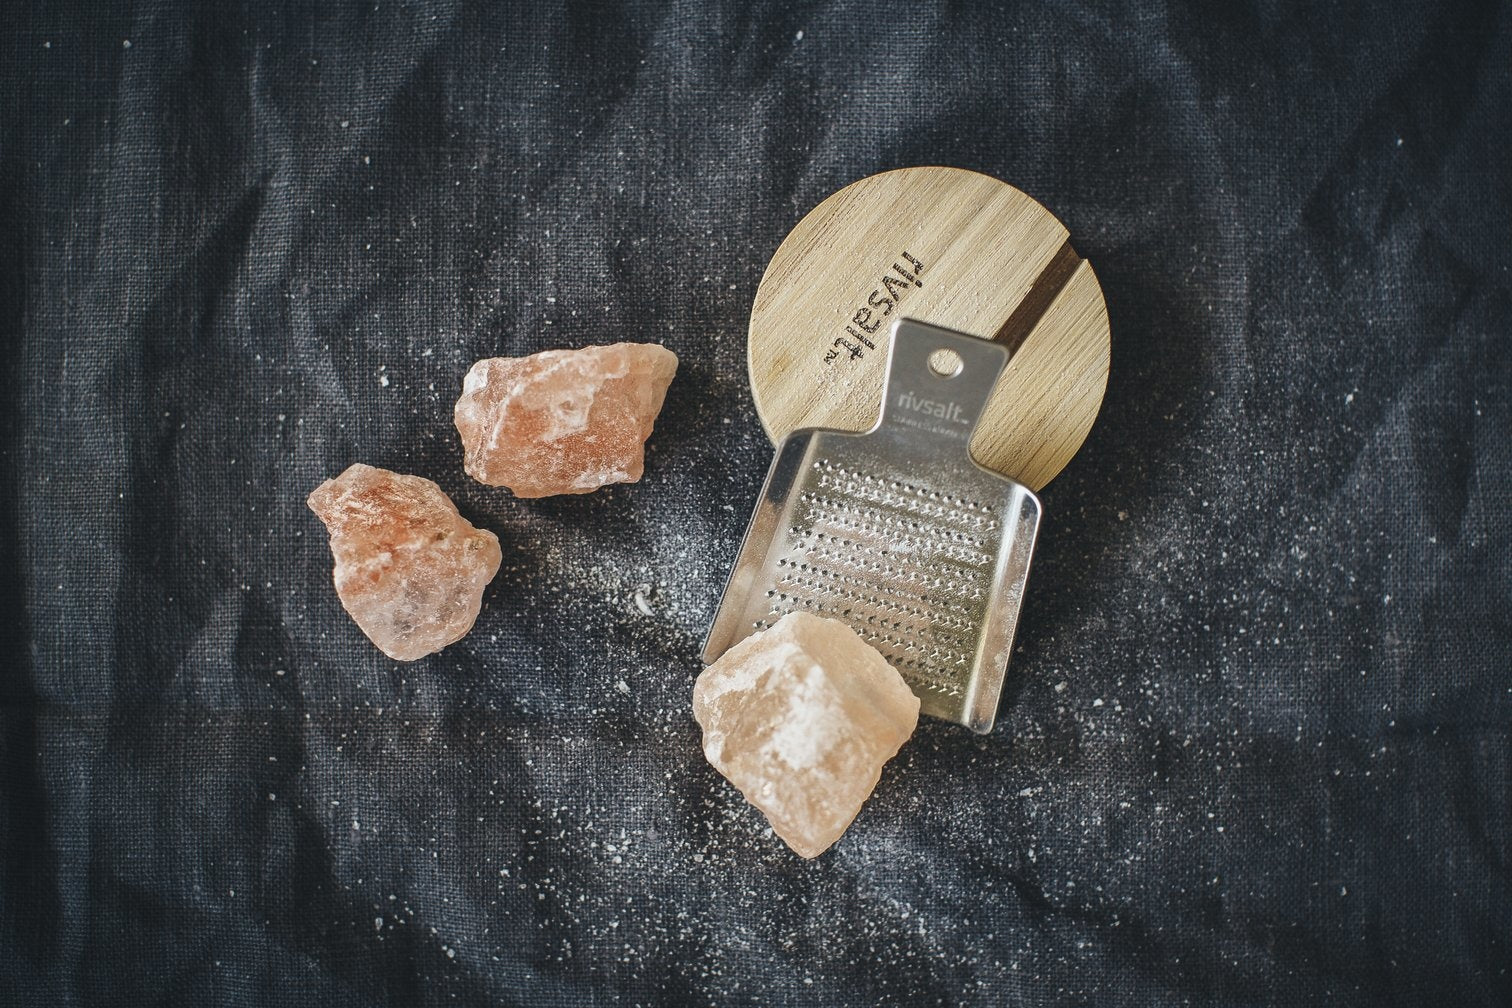 Rivsalt | 'Original' Himalayan Rock Salt Gift Set